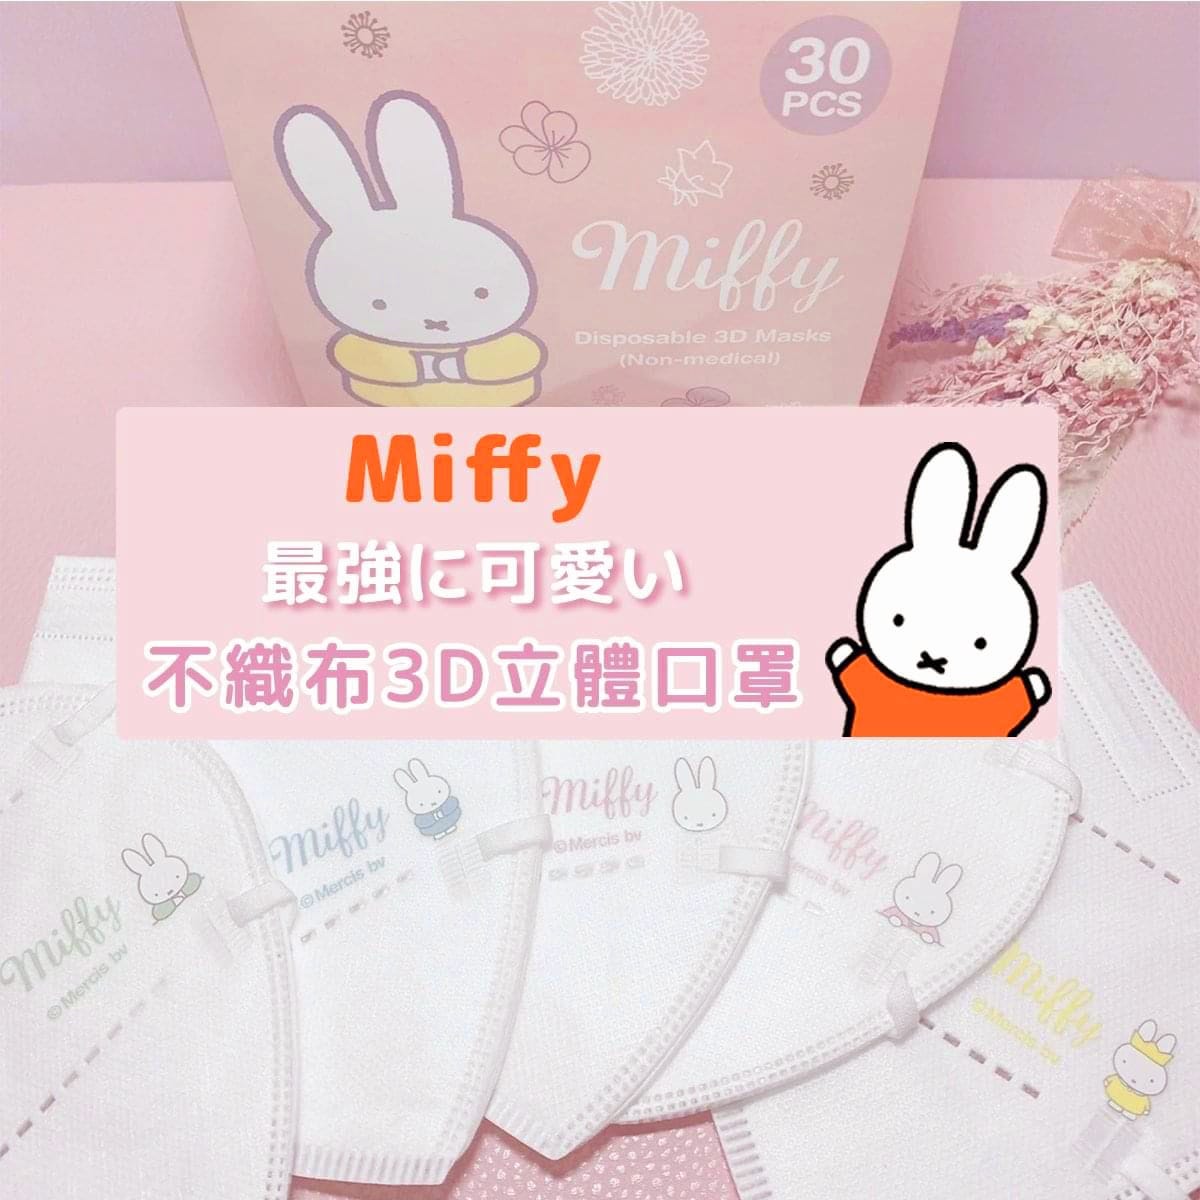 Mask Japan Miffy Disposable 3D L Size Q5x6 (30pcs)